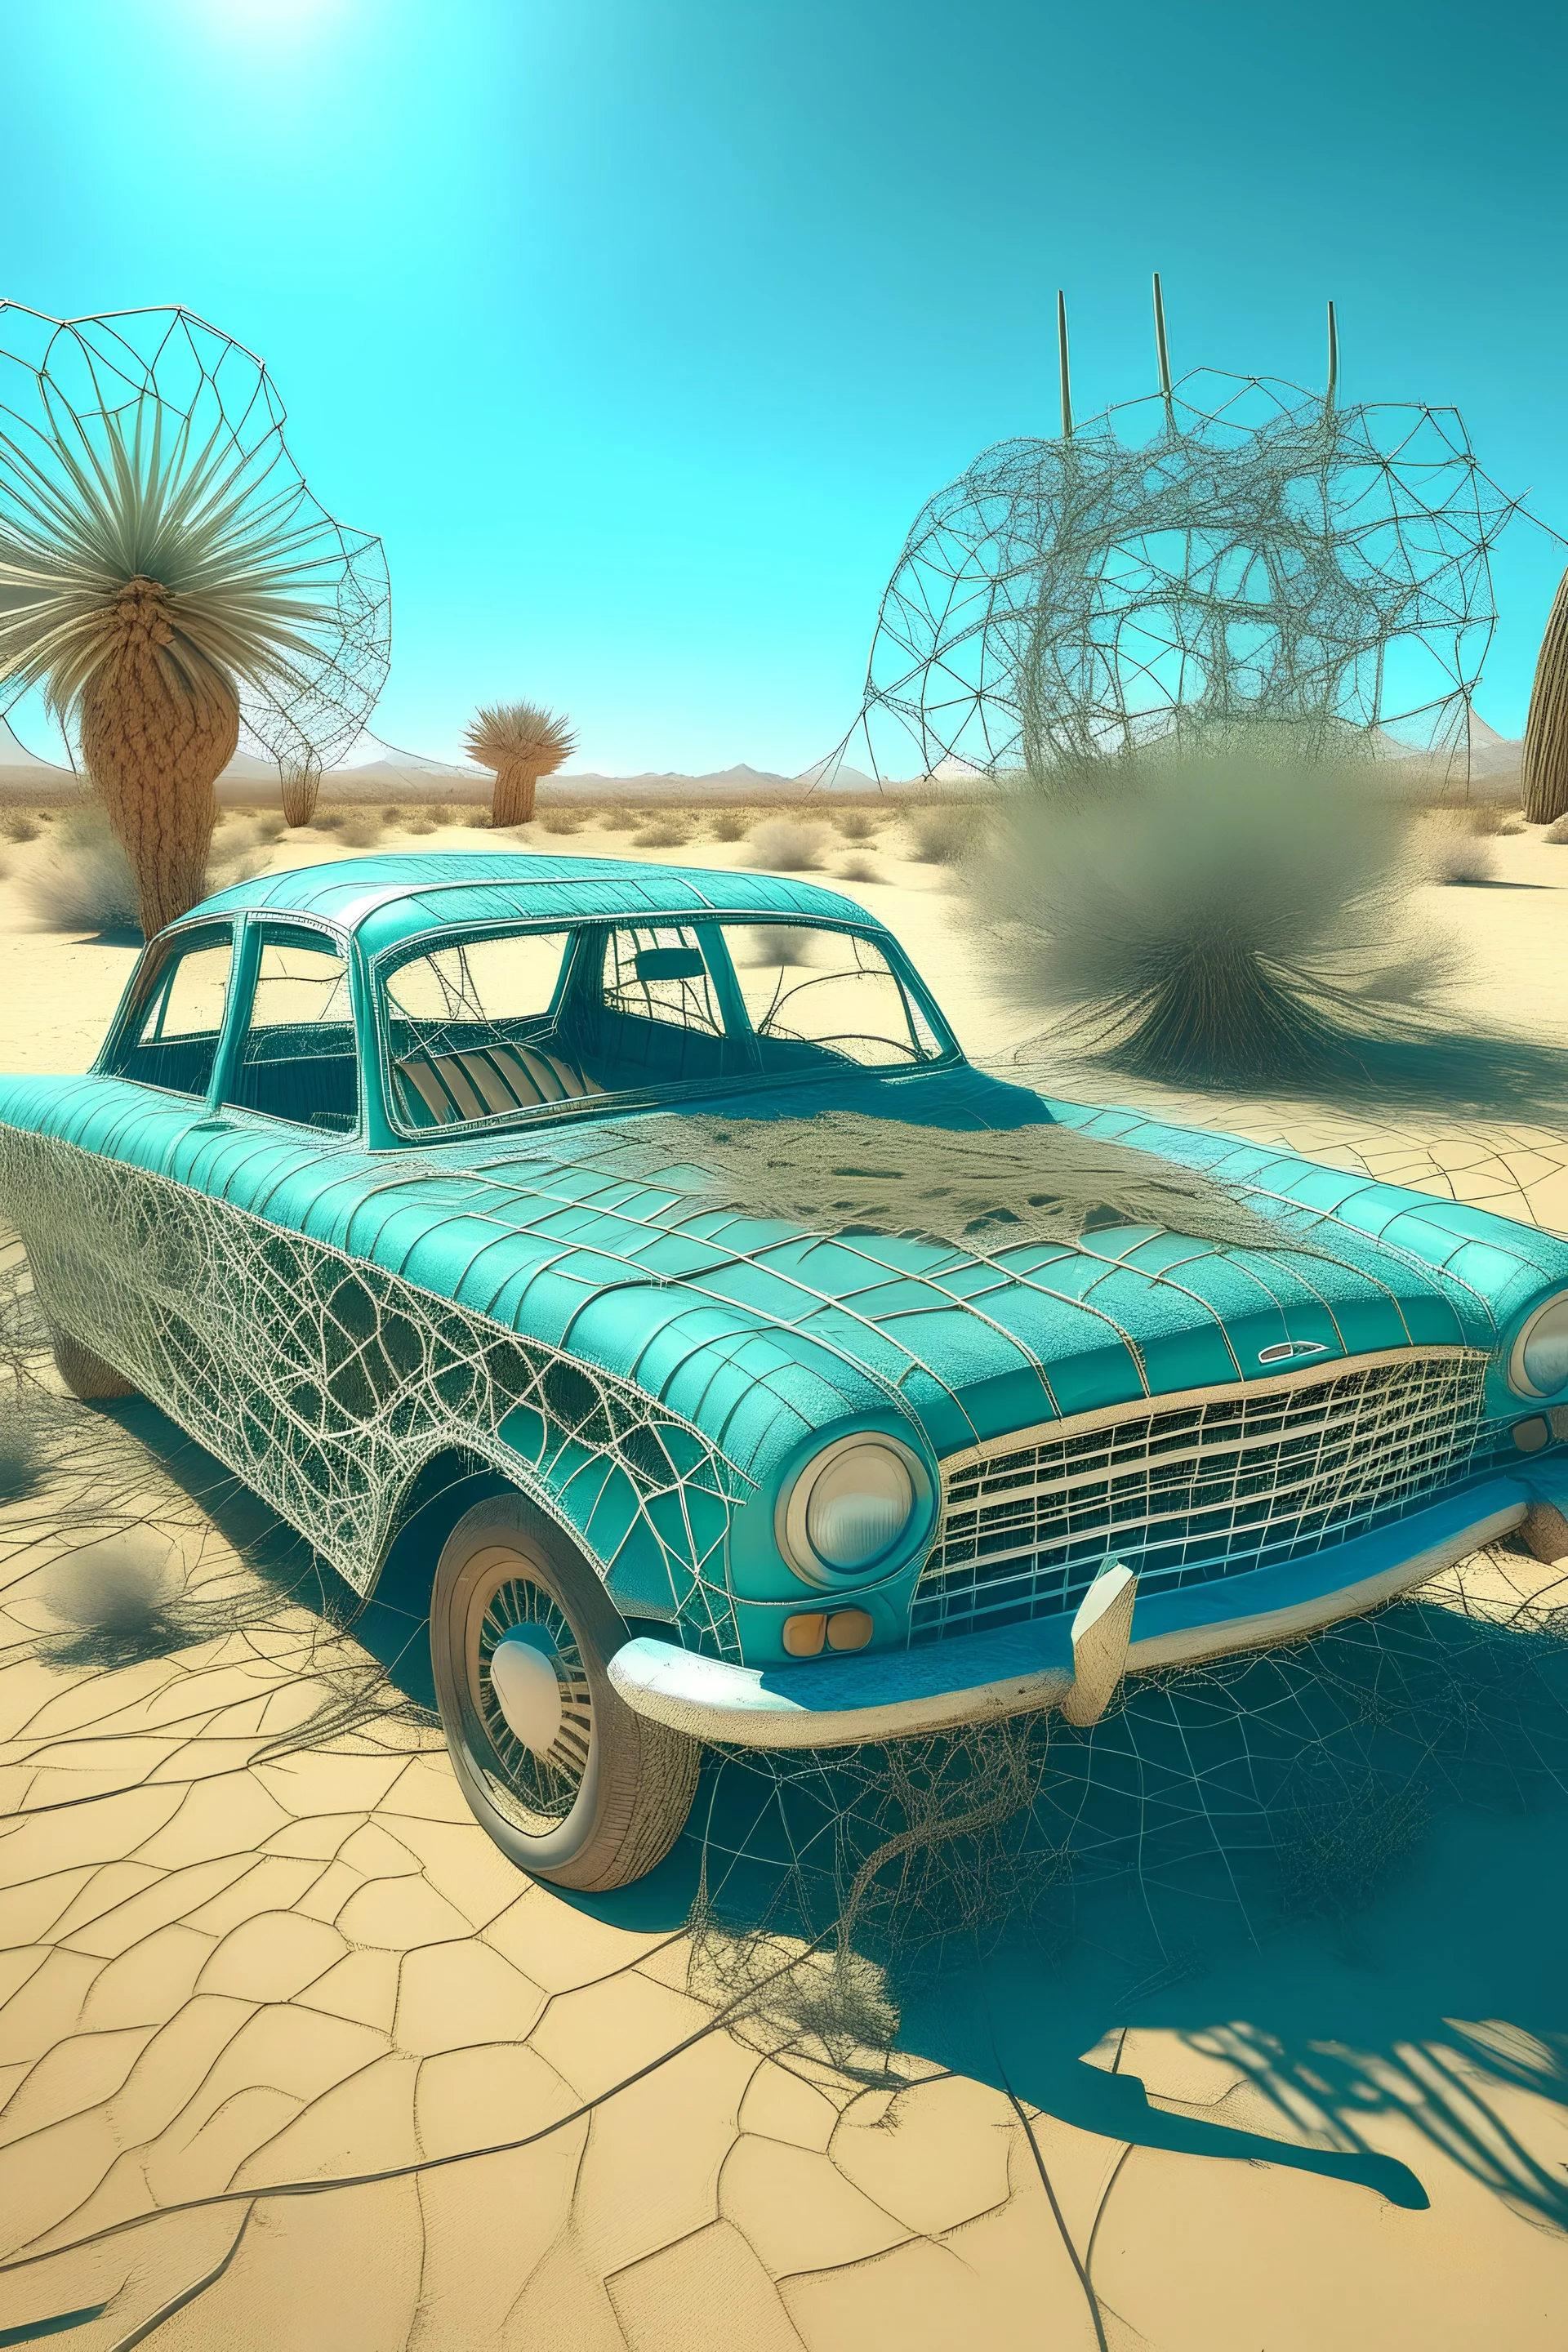 سيارة قديم في صحراء عتيقه خيوط عنكبوت ملئ خيالي